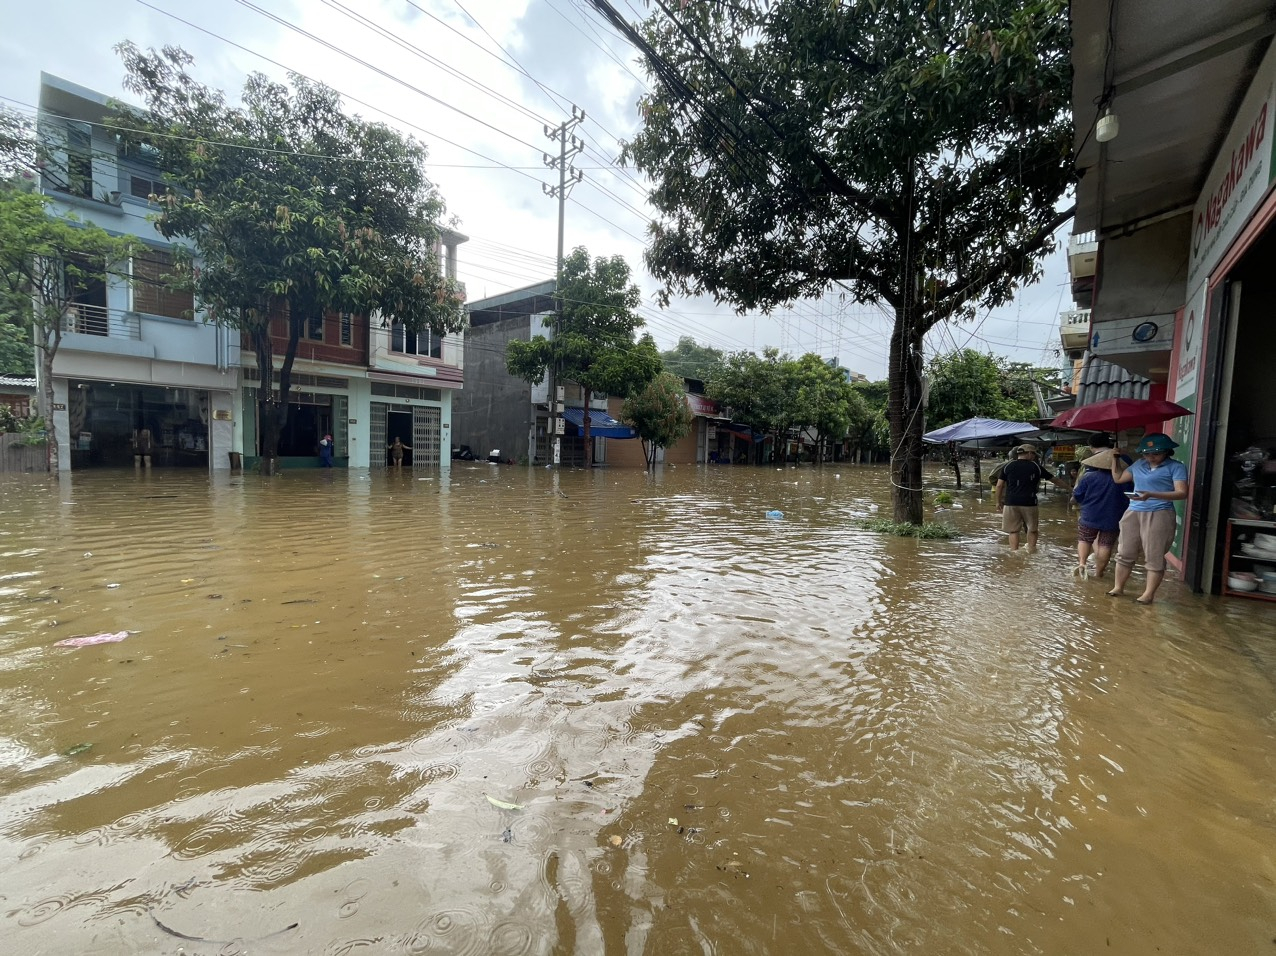 Trận mưa kéo dài nhiều giờ đồng hồ đã gây ngập úng ảnh hưởng cuộc sống người dân. Tuy nhiên, đây không phải lần đầu tiên những nơi ở thành phố miền núi Lào Cai bị ngập do mưa lớn.